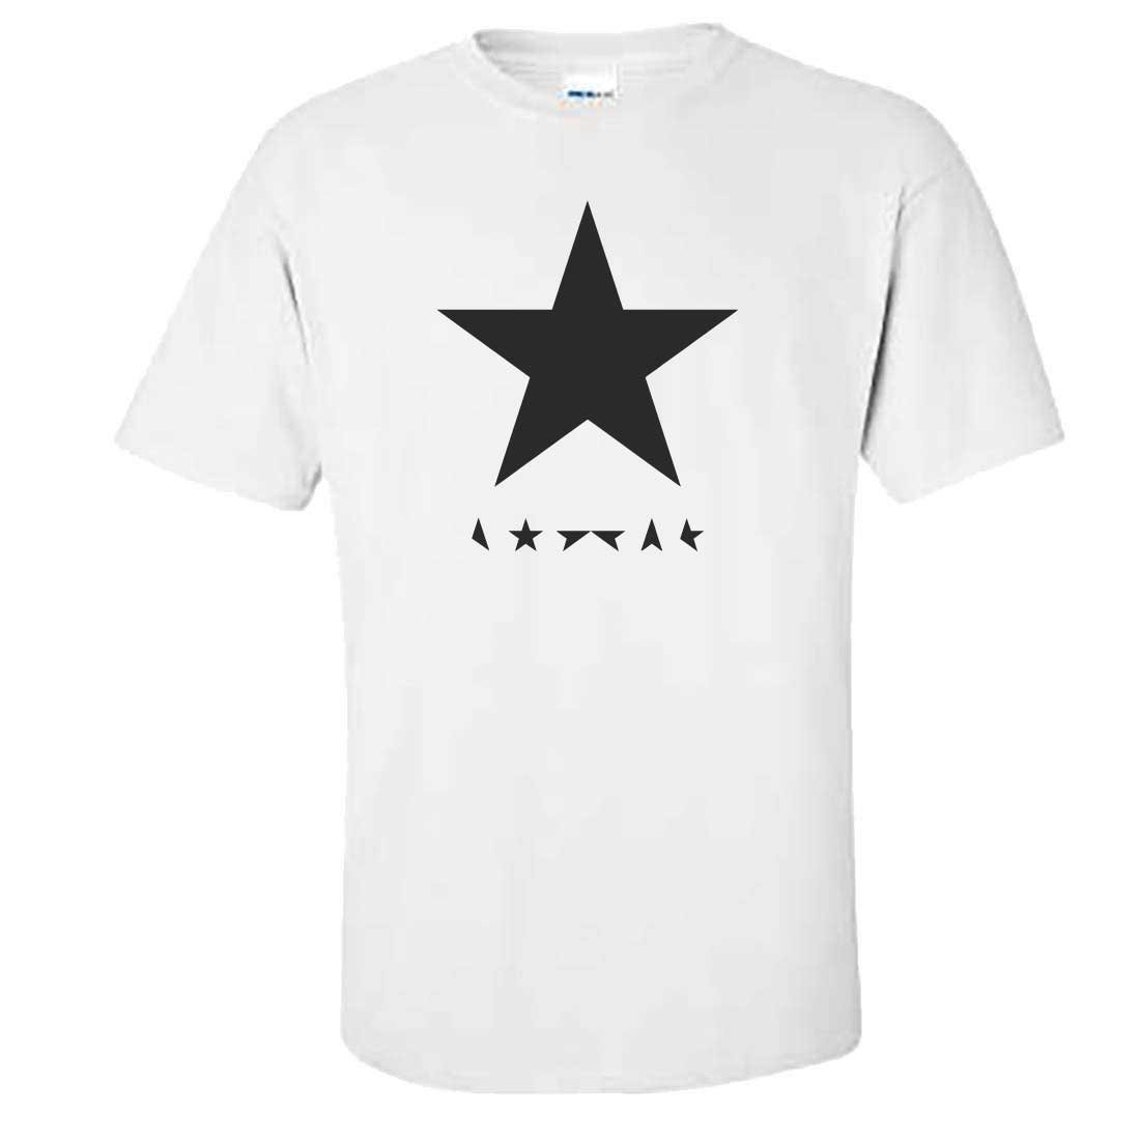 BLACKSTAR Tshirt Mens David Bowie Black Star T Shirt | Etsy